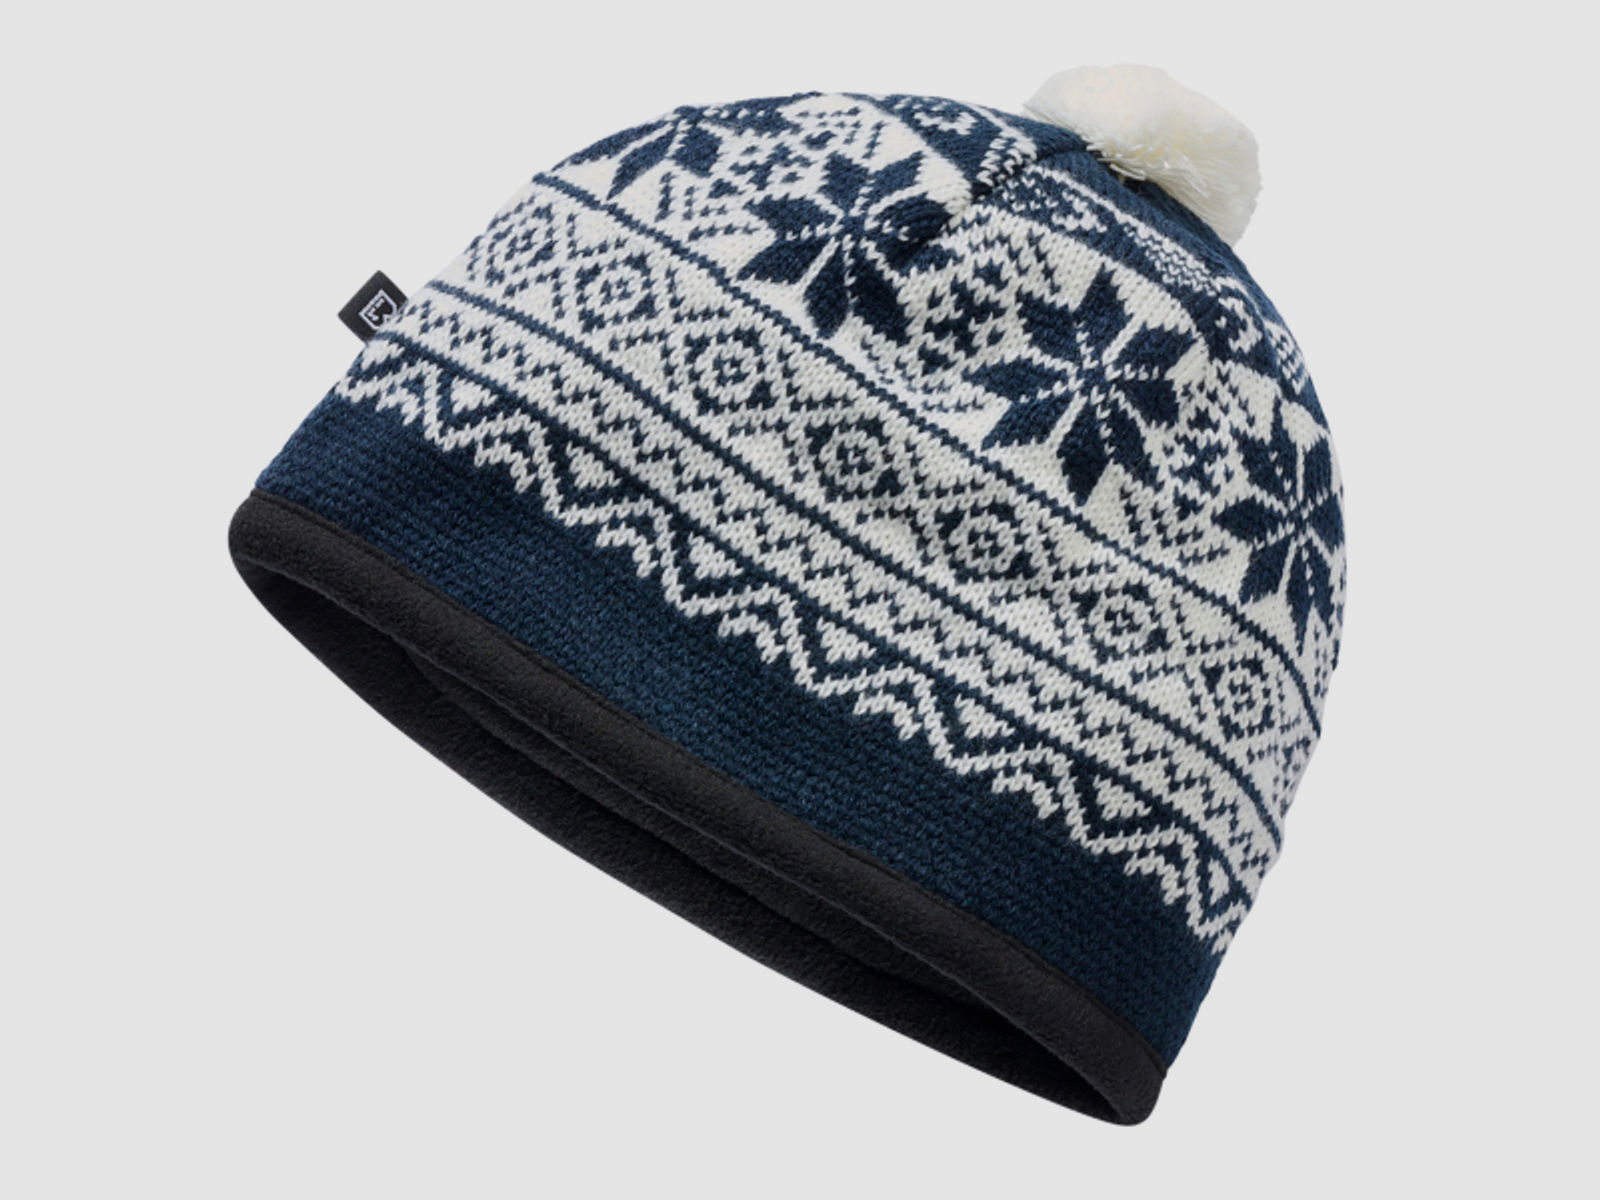 Wintermütze / Snow Cap von Brandit - Dunkelblau - Unigröße - skandinavisches Muster - Pudelmütze